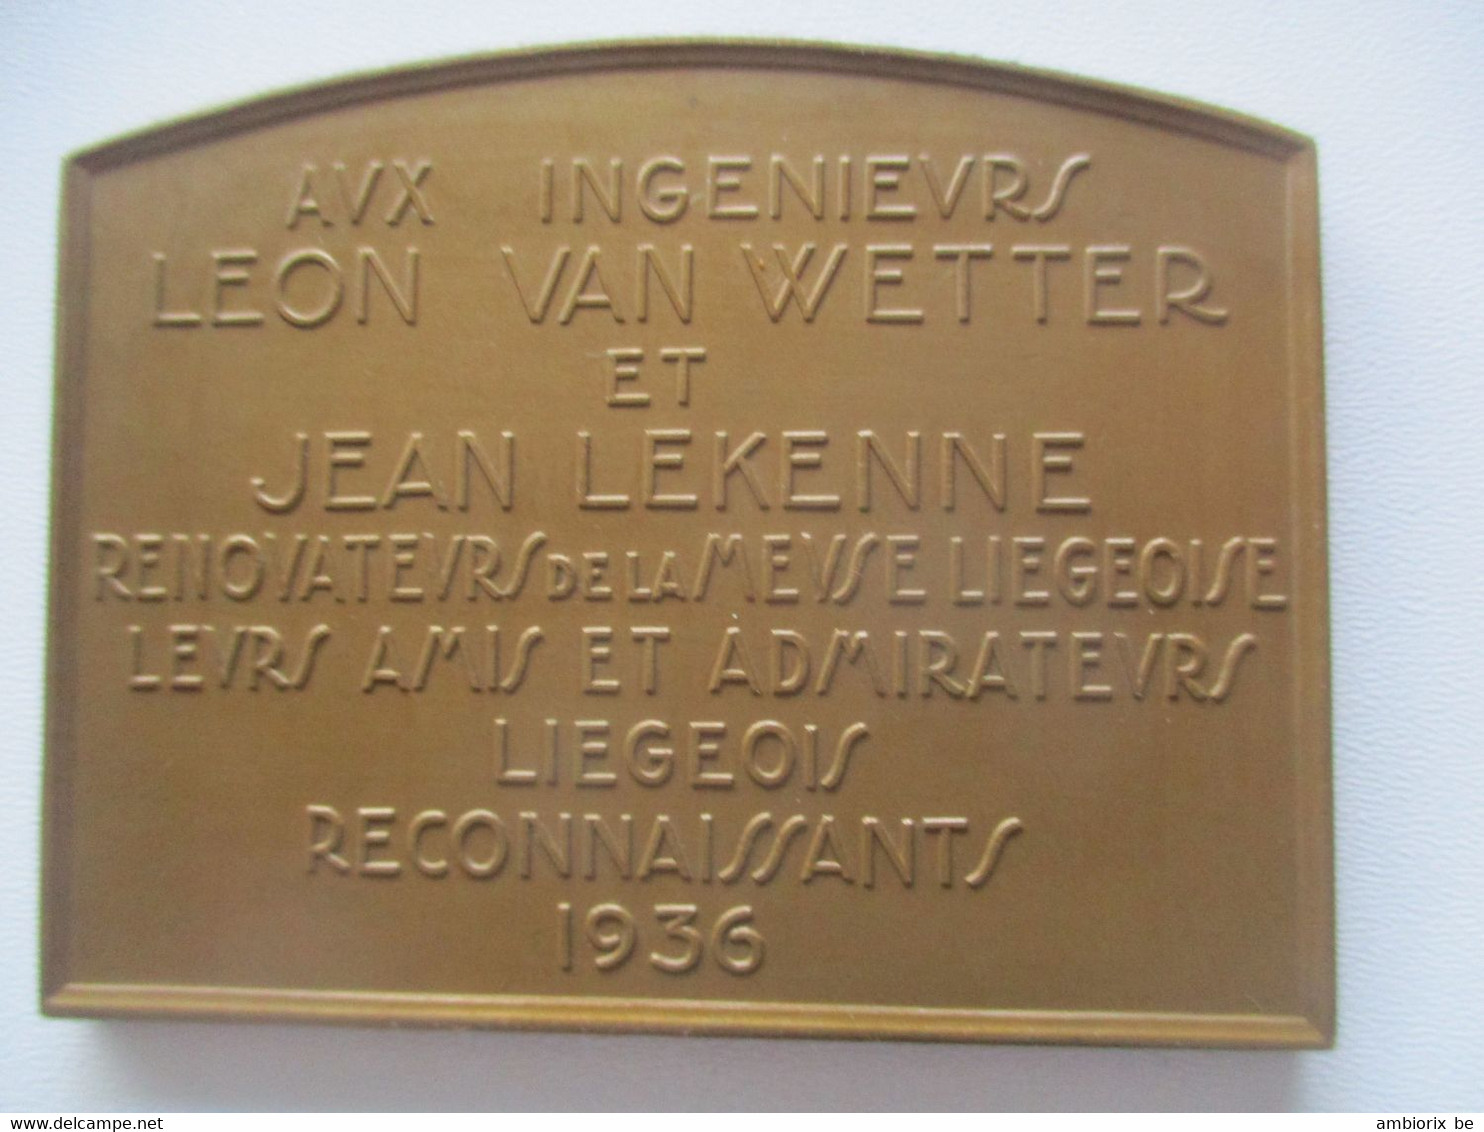 Le Barrage De Monsin à Liège - Aux Ingénieurs Léon Van Wetter Et Jean Lekenne - Toeristische